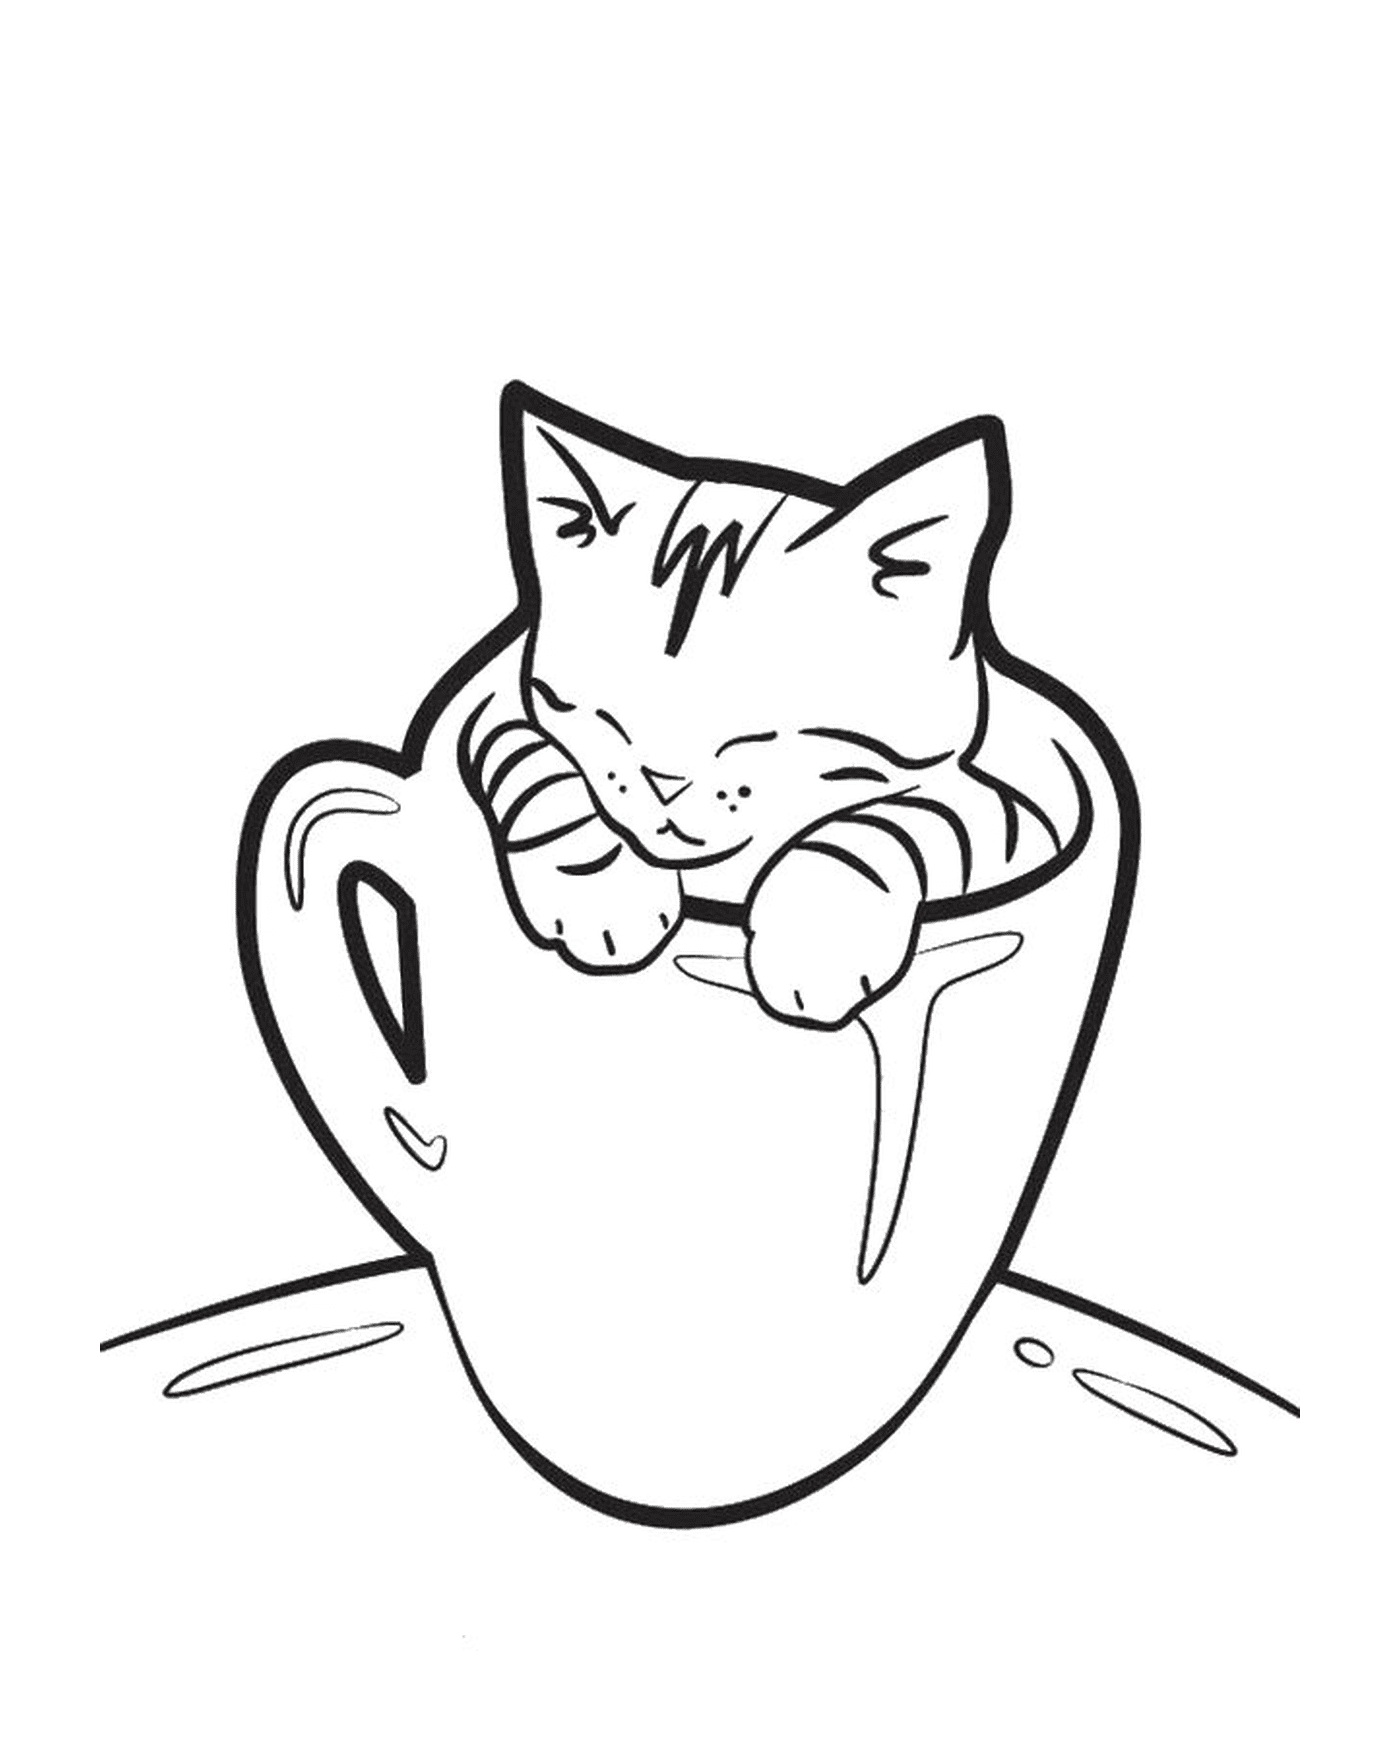  كوب من القهوة مع قطة مضحكة 